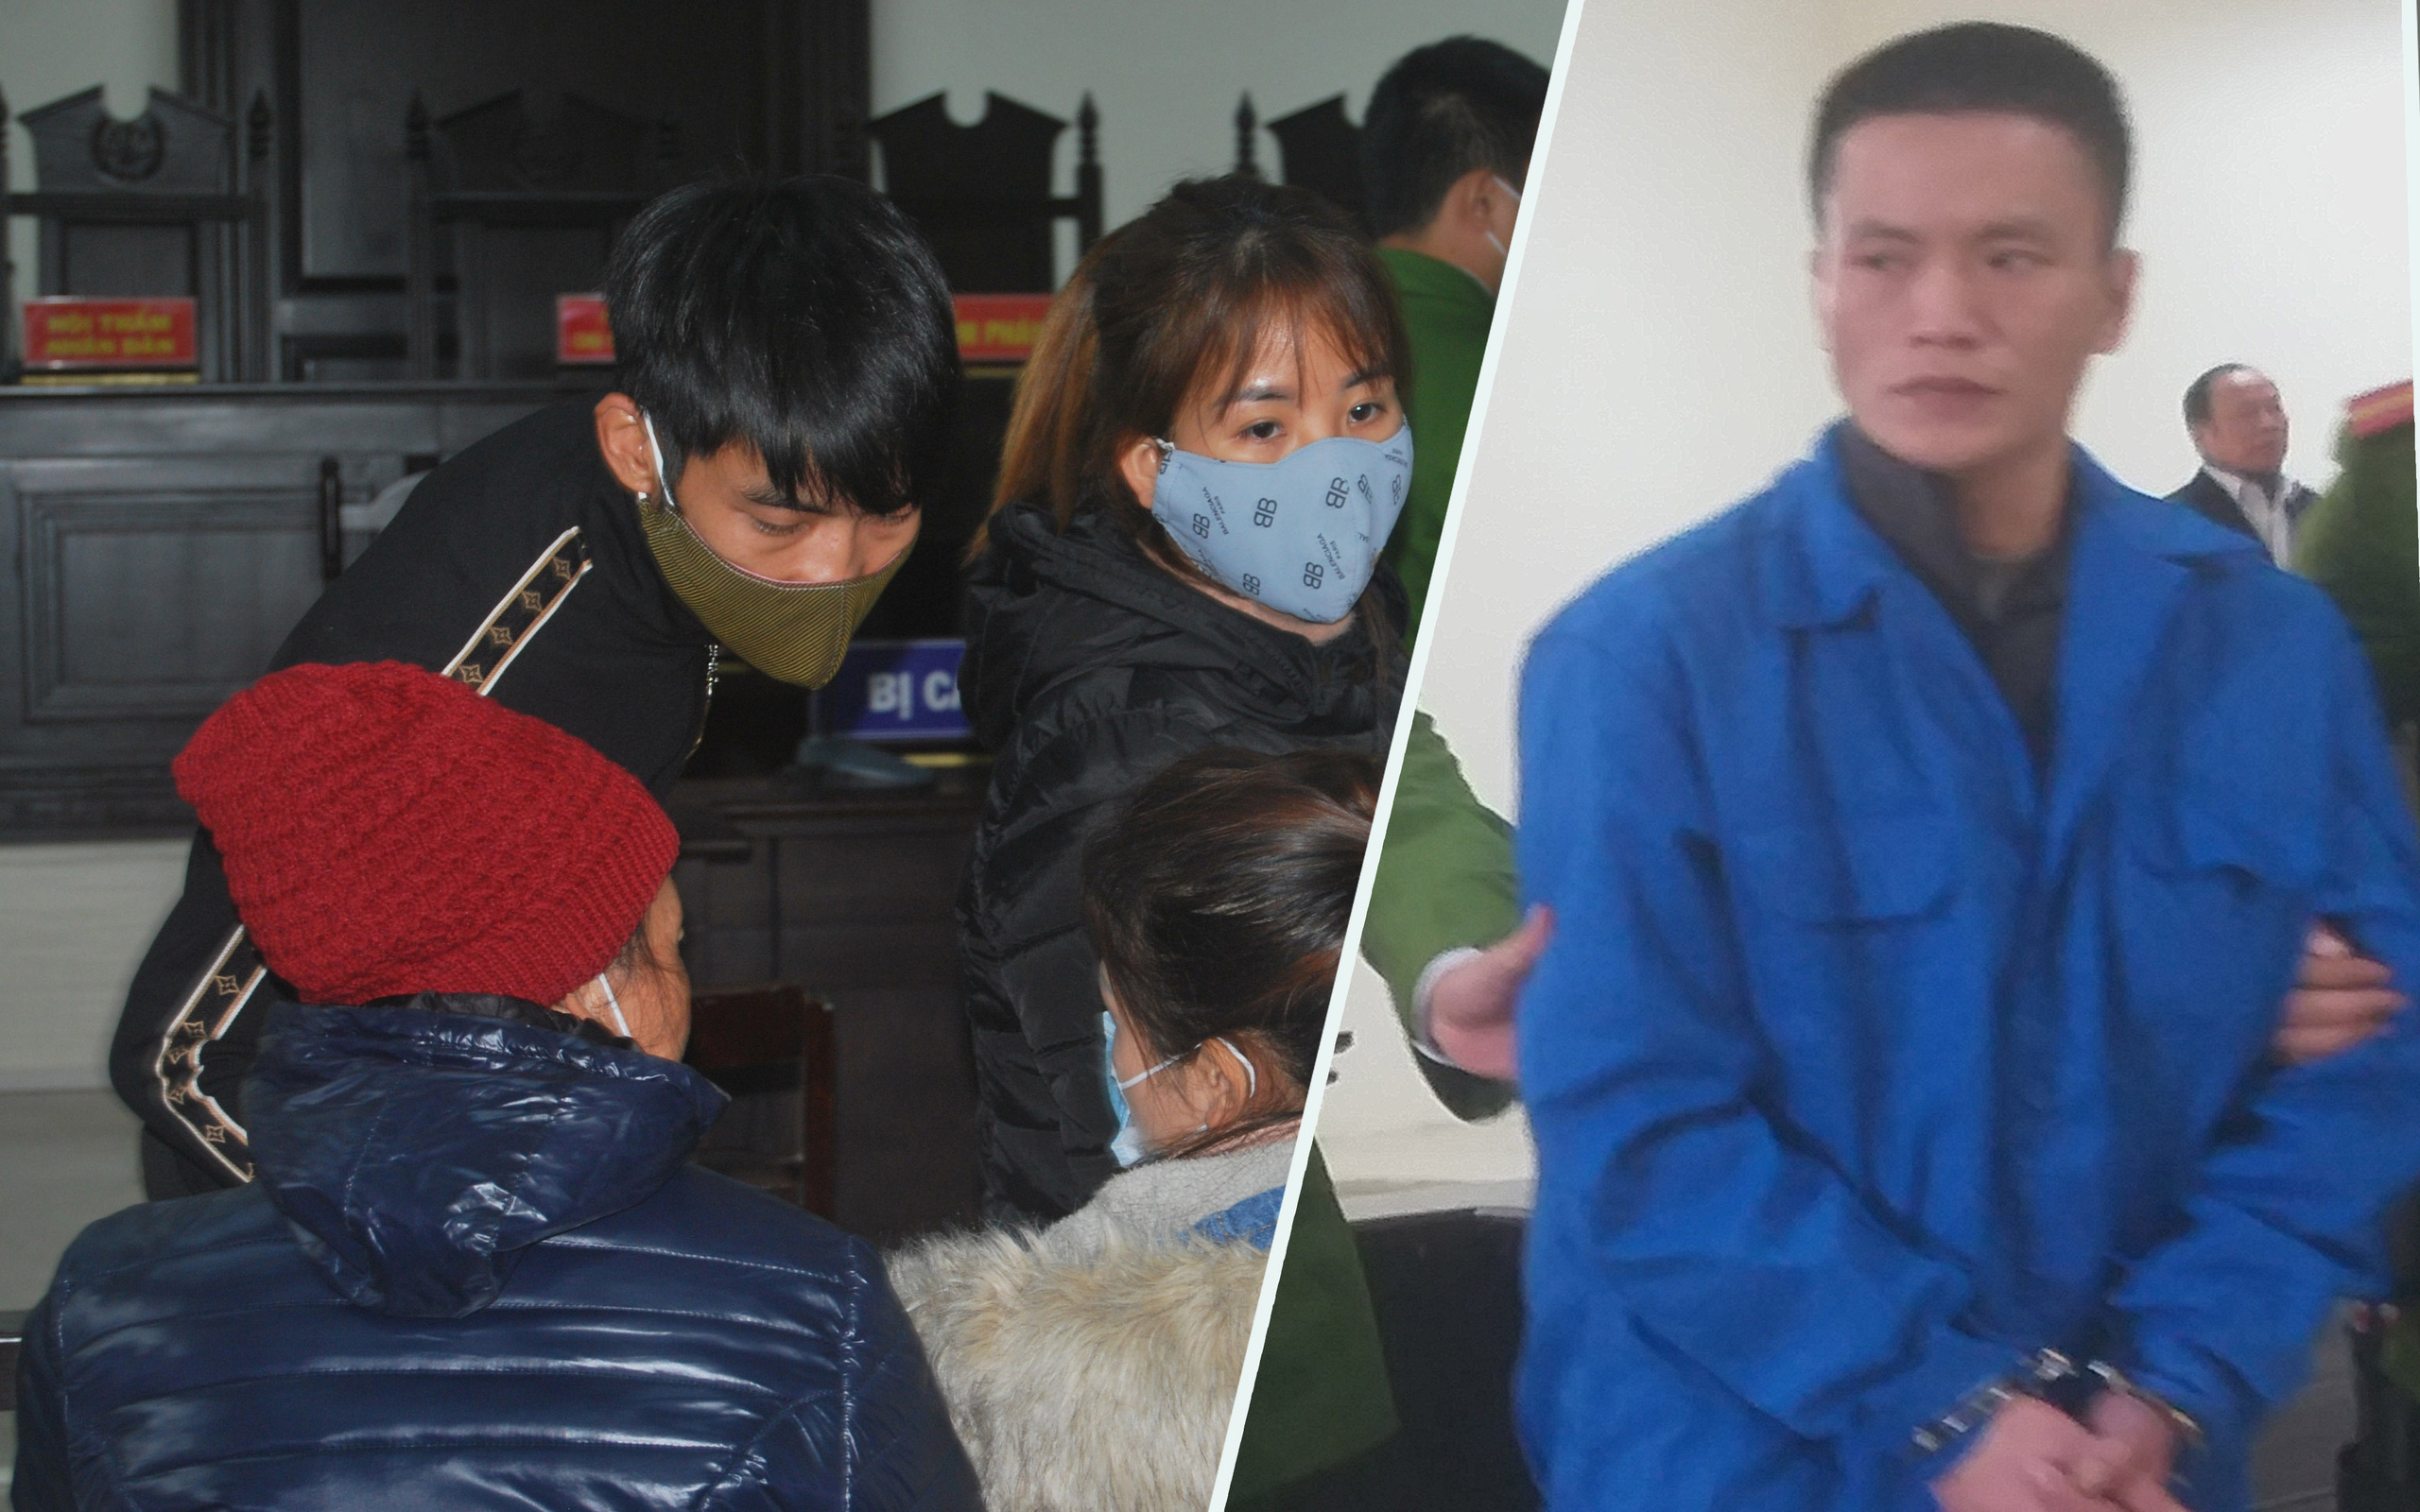 Hành trình 12 năm lẩn trốn sau khi sát hại tài xế xe ôm của tên cướp ở Nam Định: "Án chồng án", bị bắt khi đang cai nghiện với cái tên giả